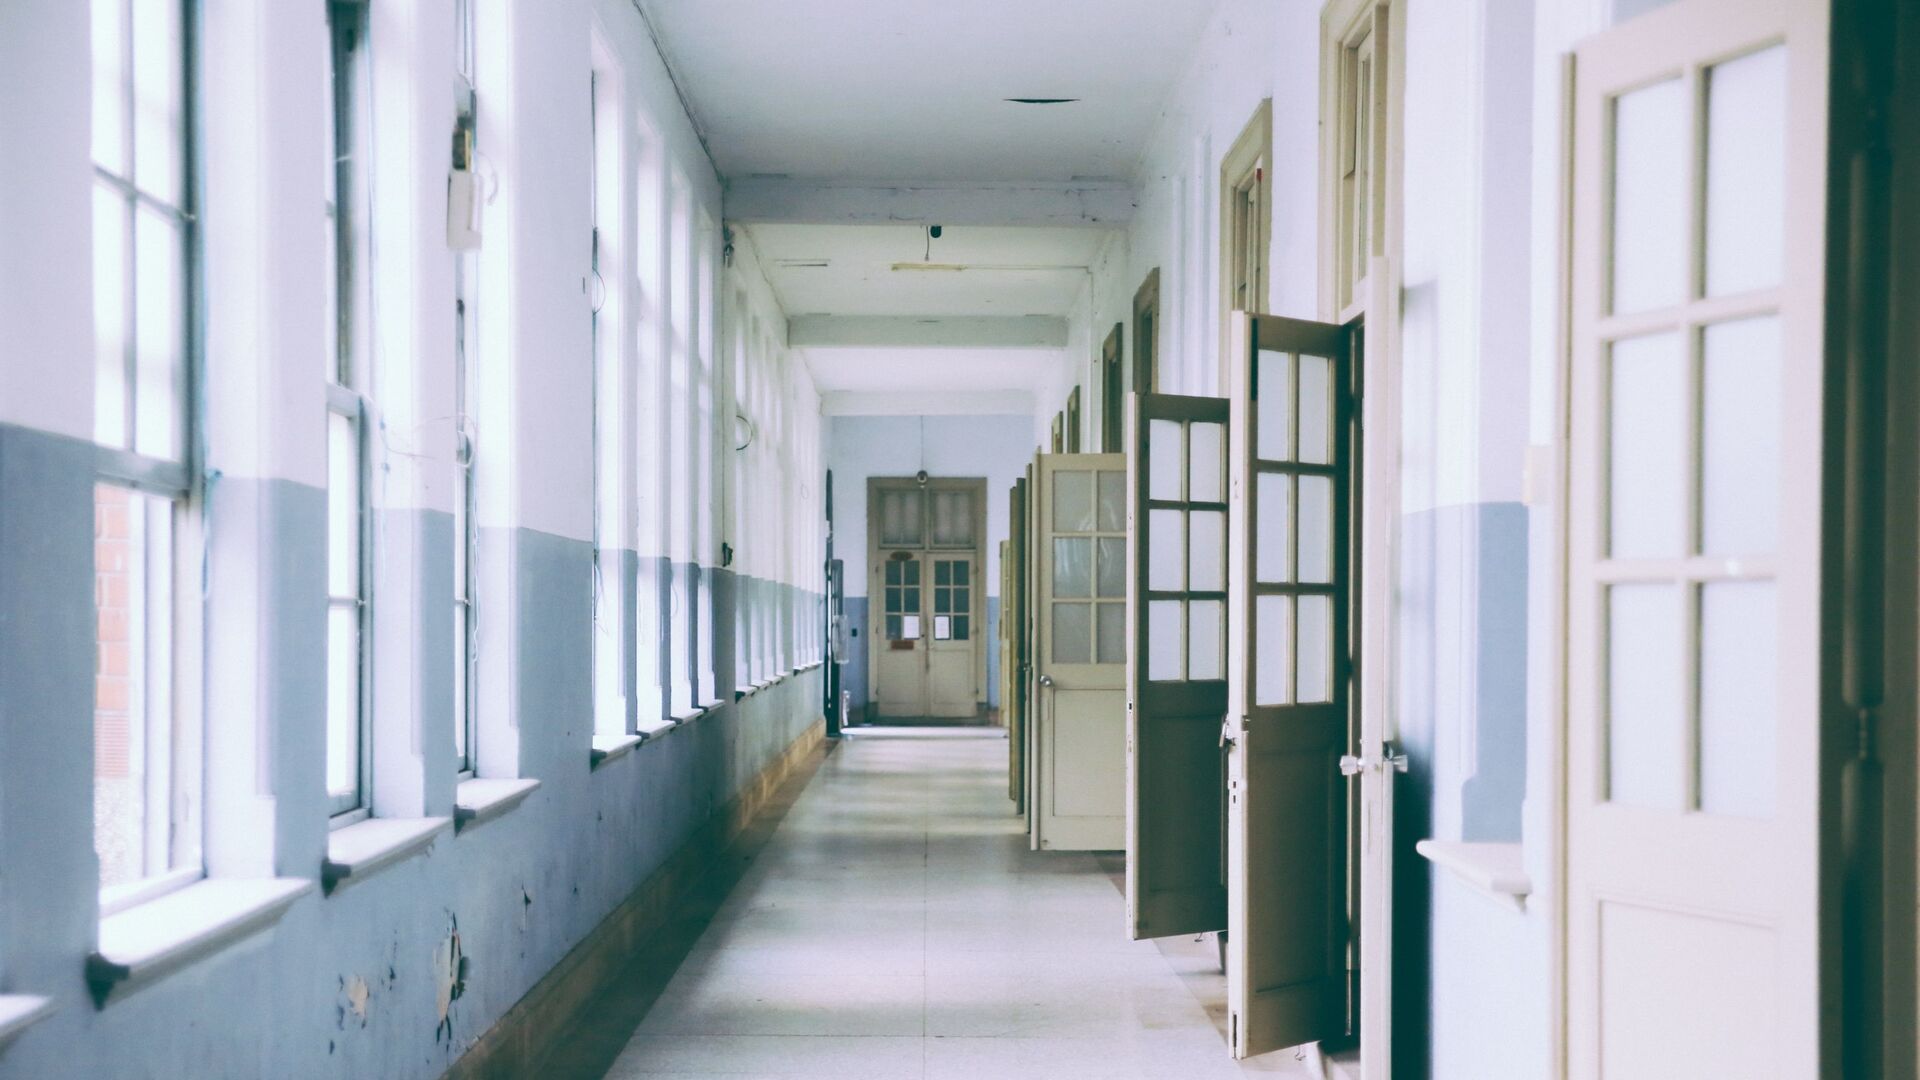 Школьный коридор, фото из архива - Sputnik Азербайджан, 1920, 23.06.2021